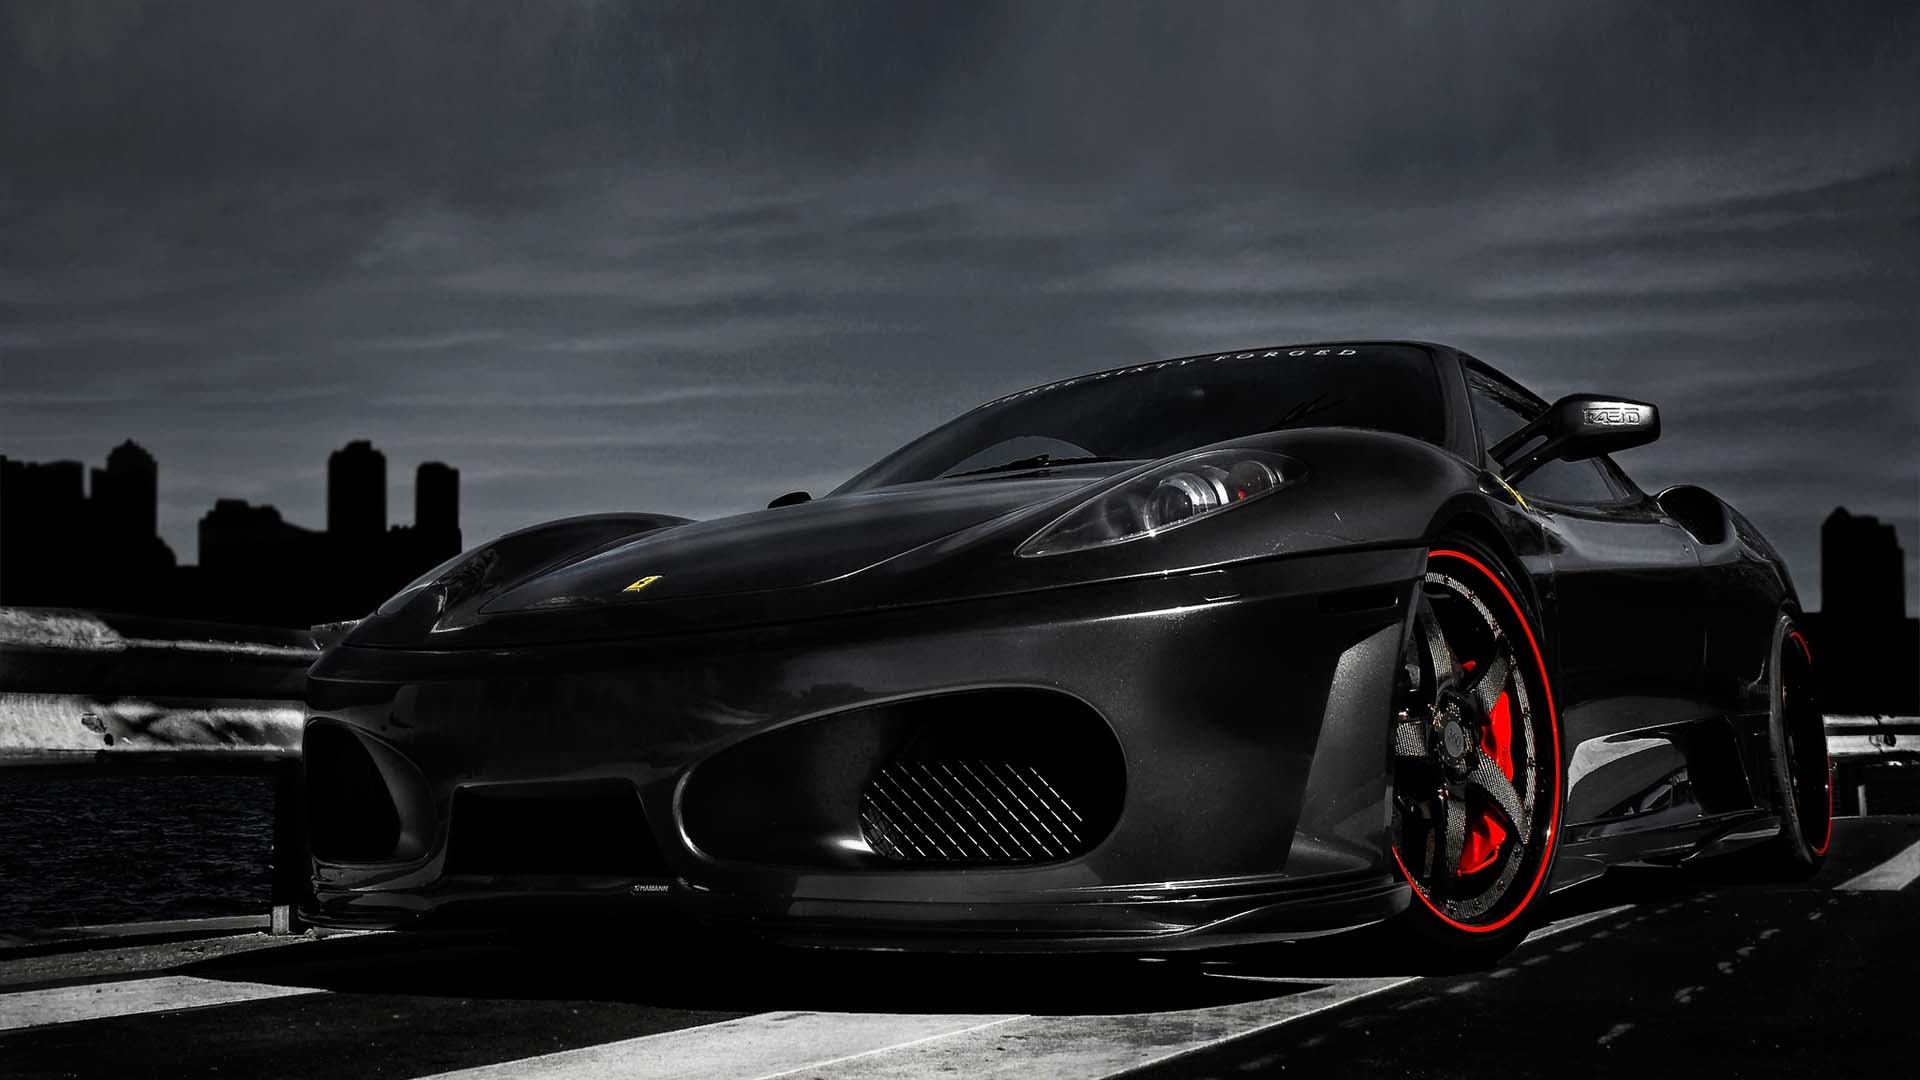 Ferrari Cars Wallpapers Hd Free Download For Desktop